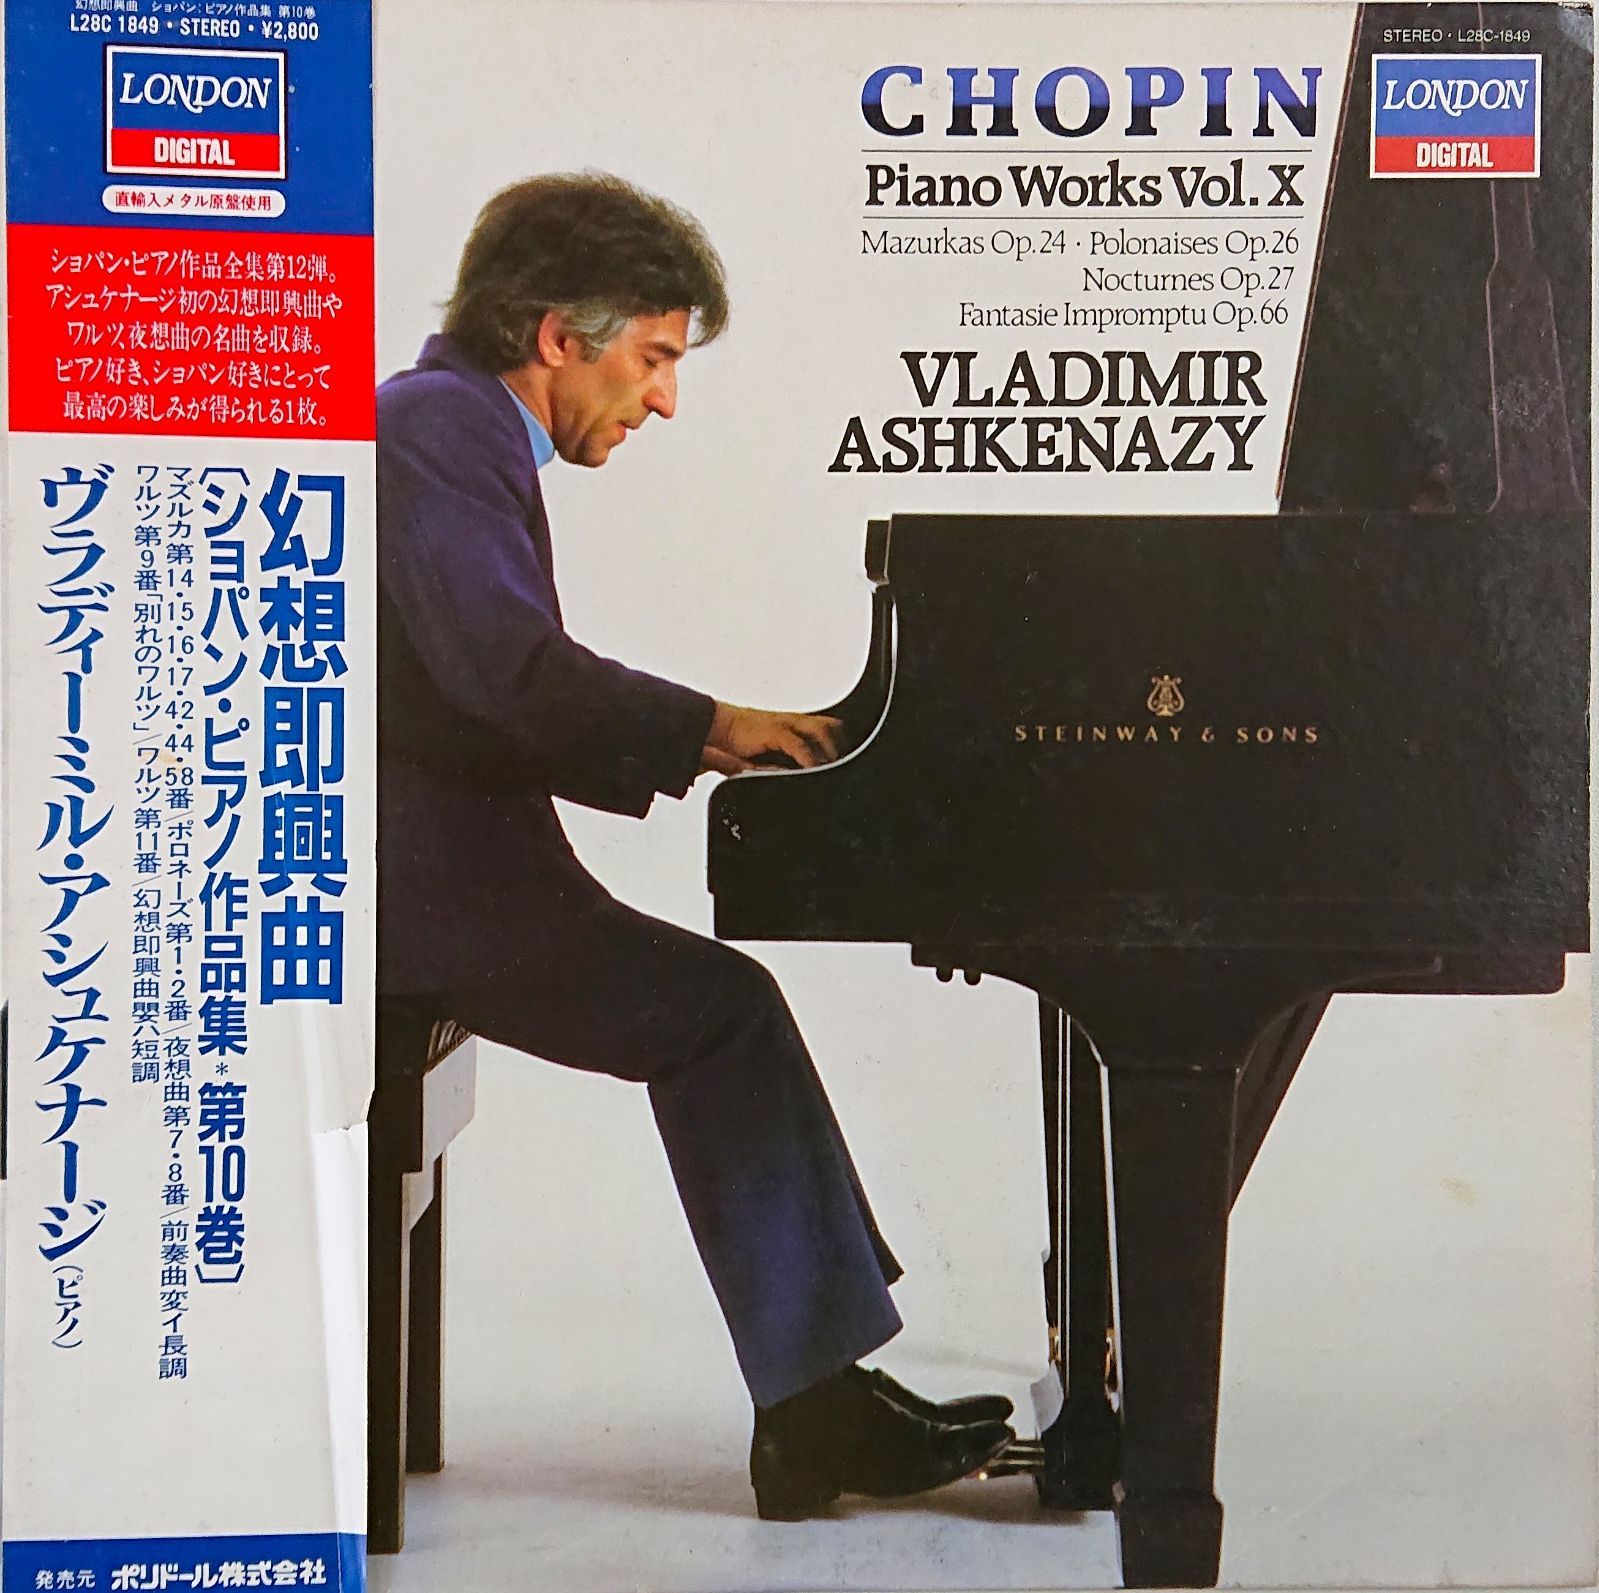 ショパンピアノ作品全集 レコード盤15枚組ウラディーミル 